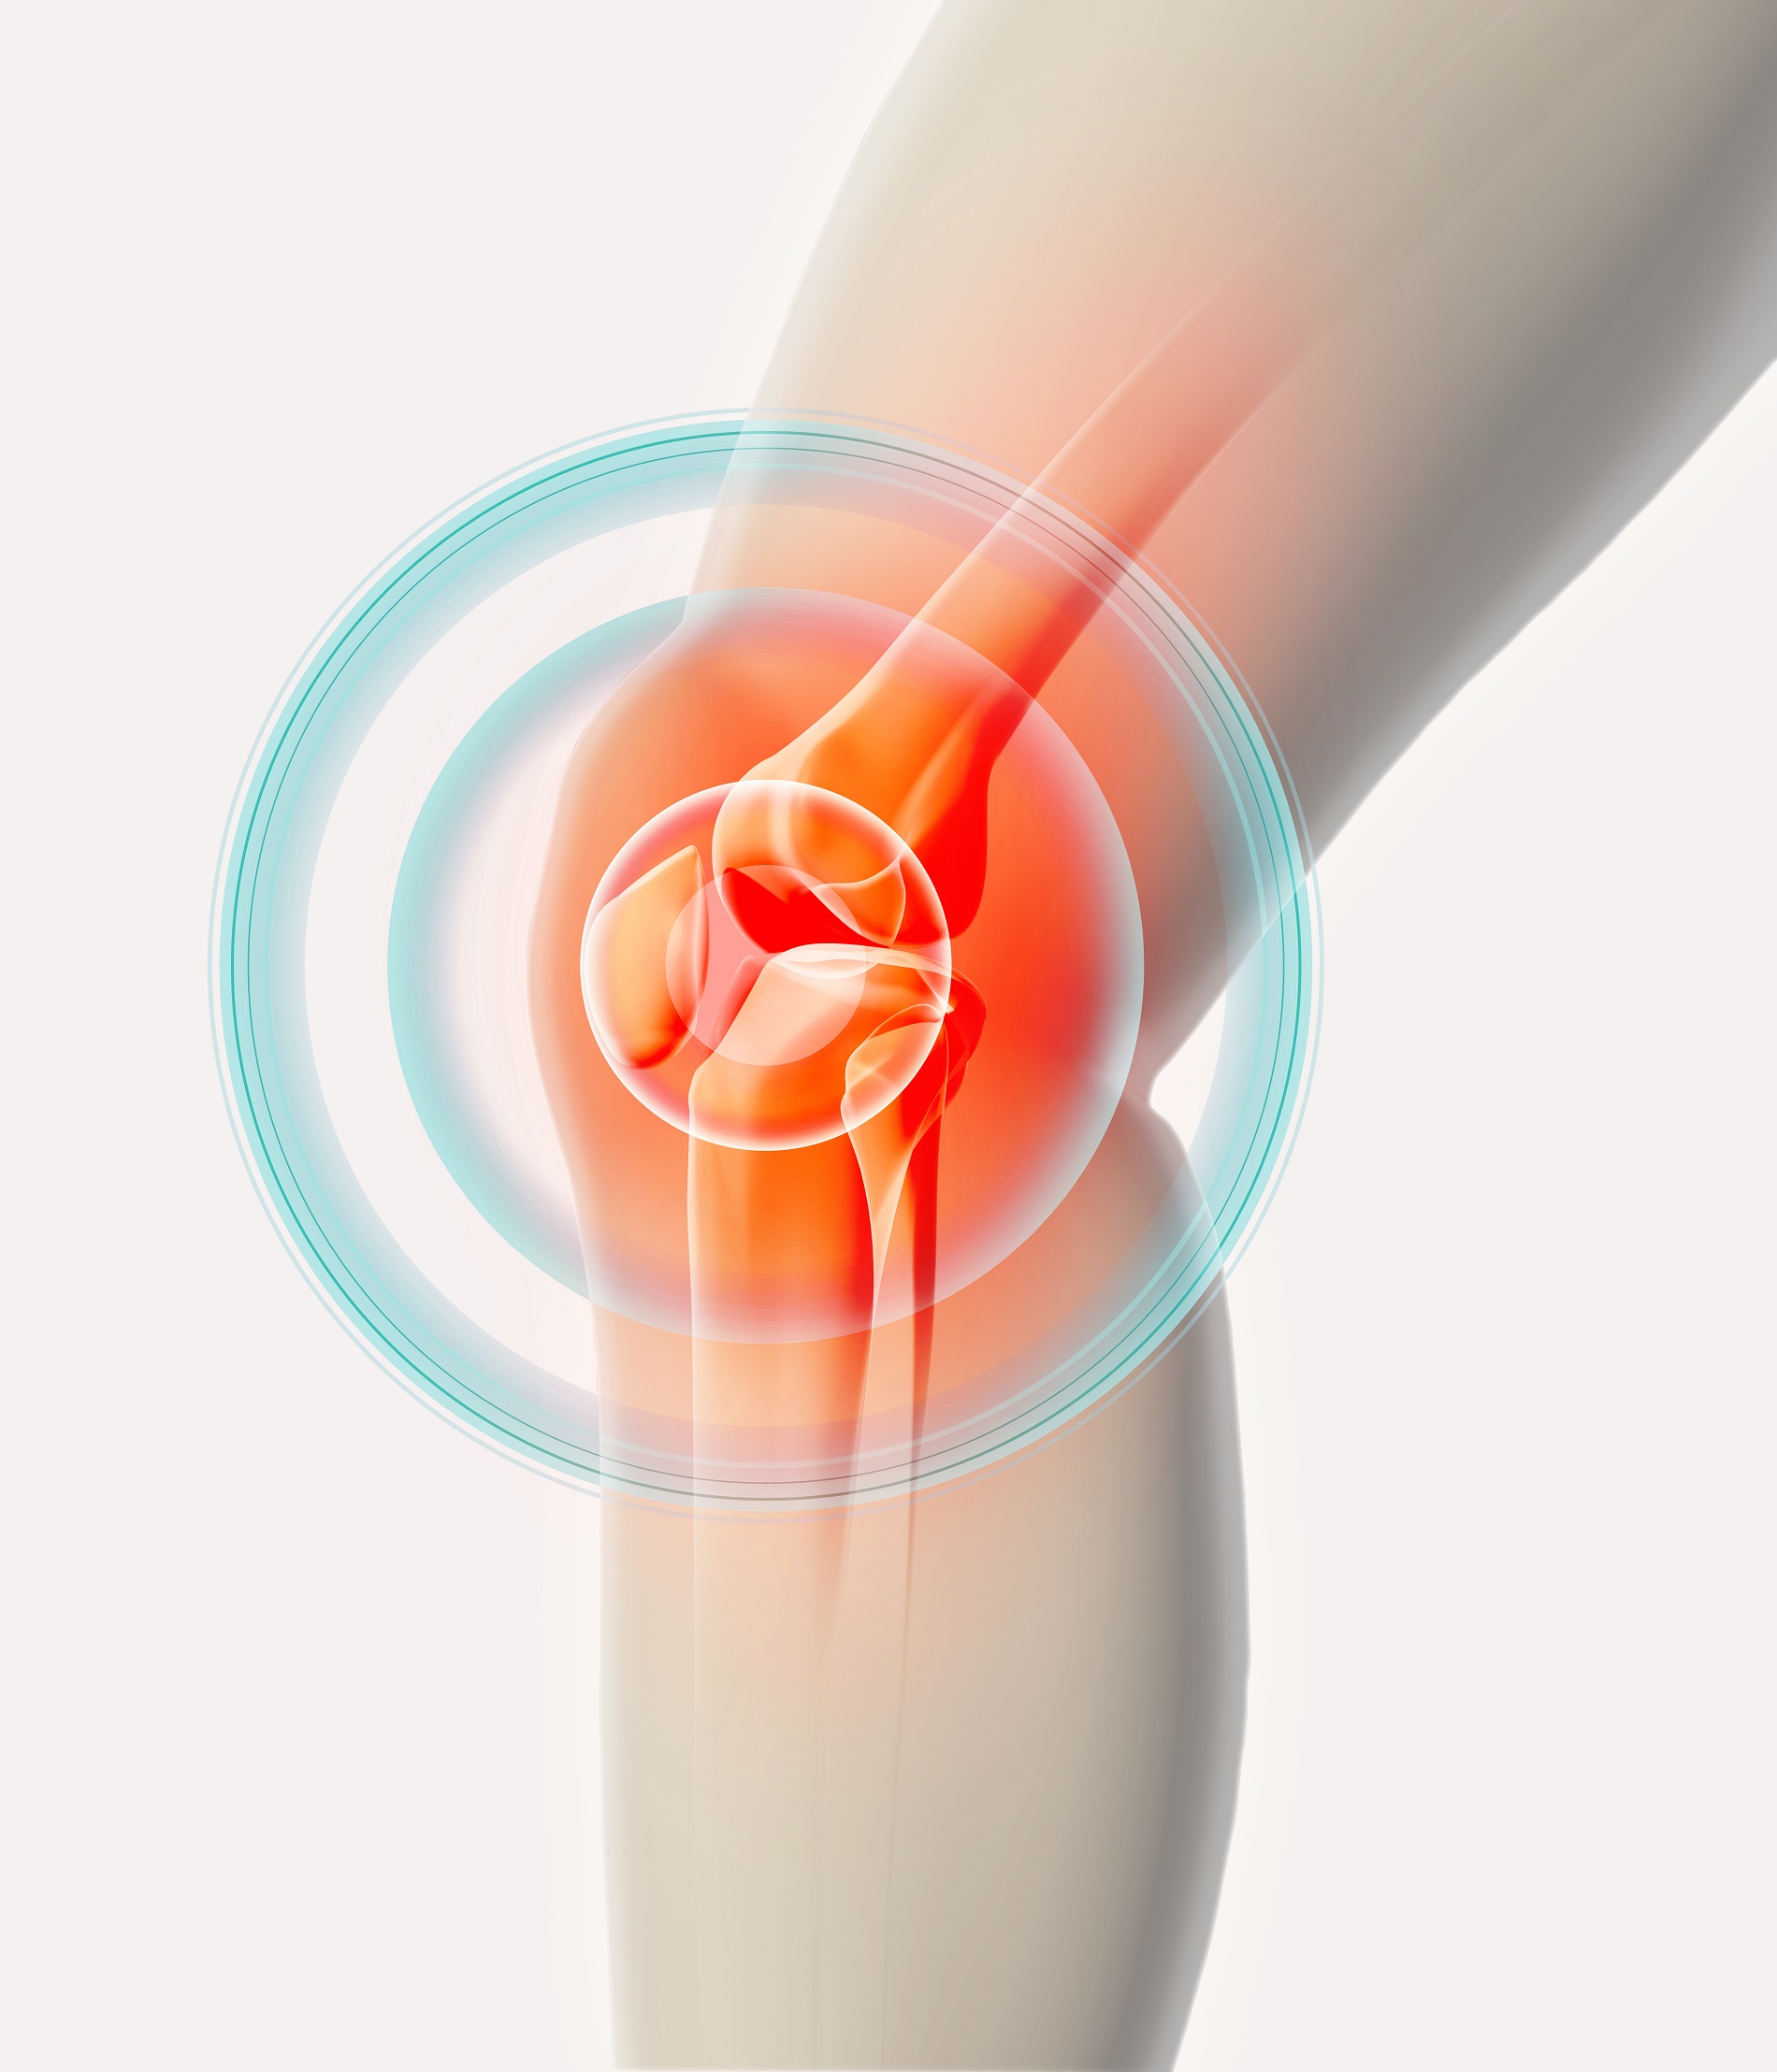 fájdalom a csípőízület izmain járás közben serdülőkorban a lábak ízületeinek fájdalma